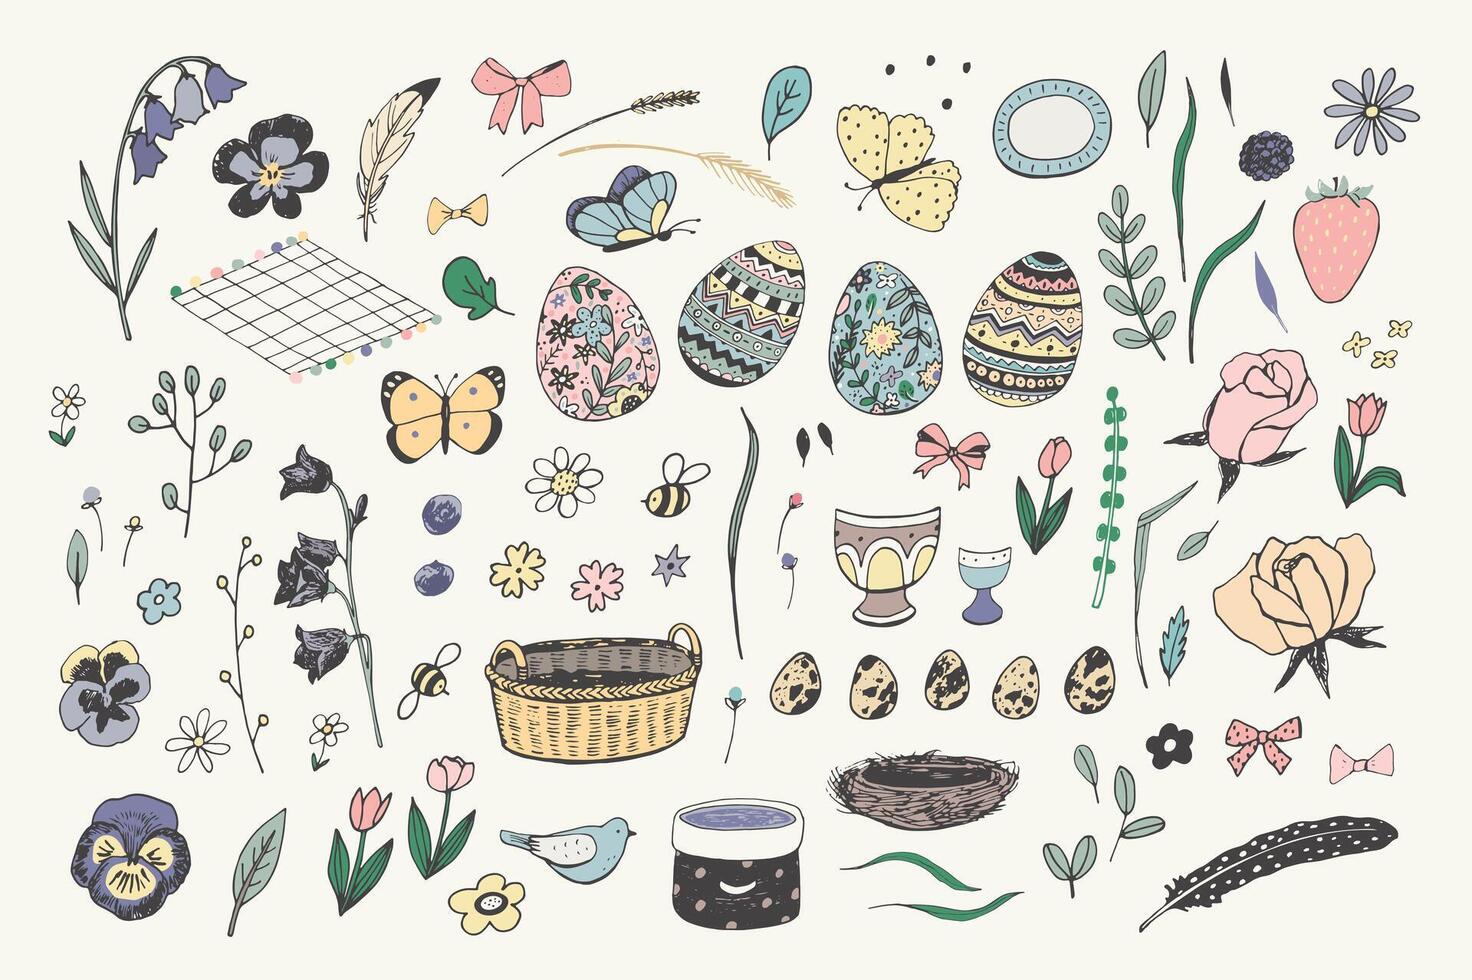 påsk ägg, kaniner, kyckling, blommor vår vektor illustrationer uppsättning.